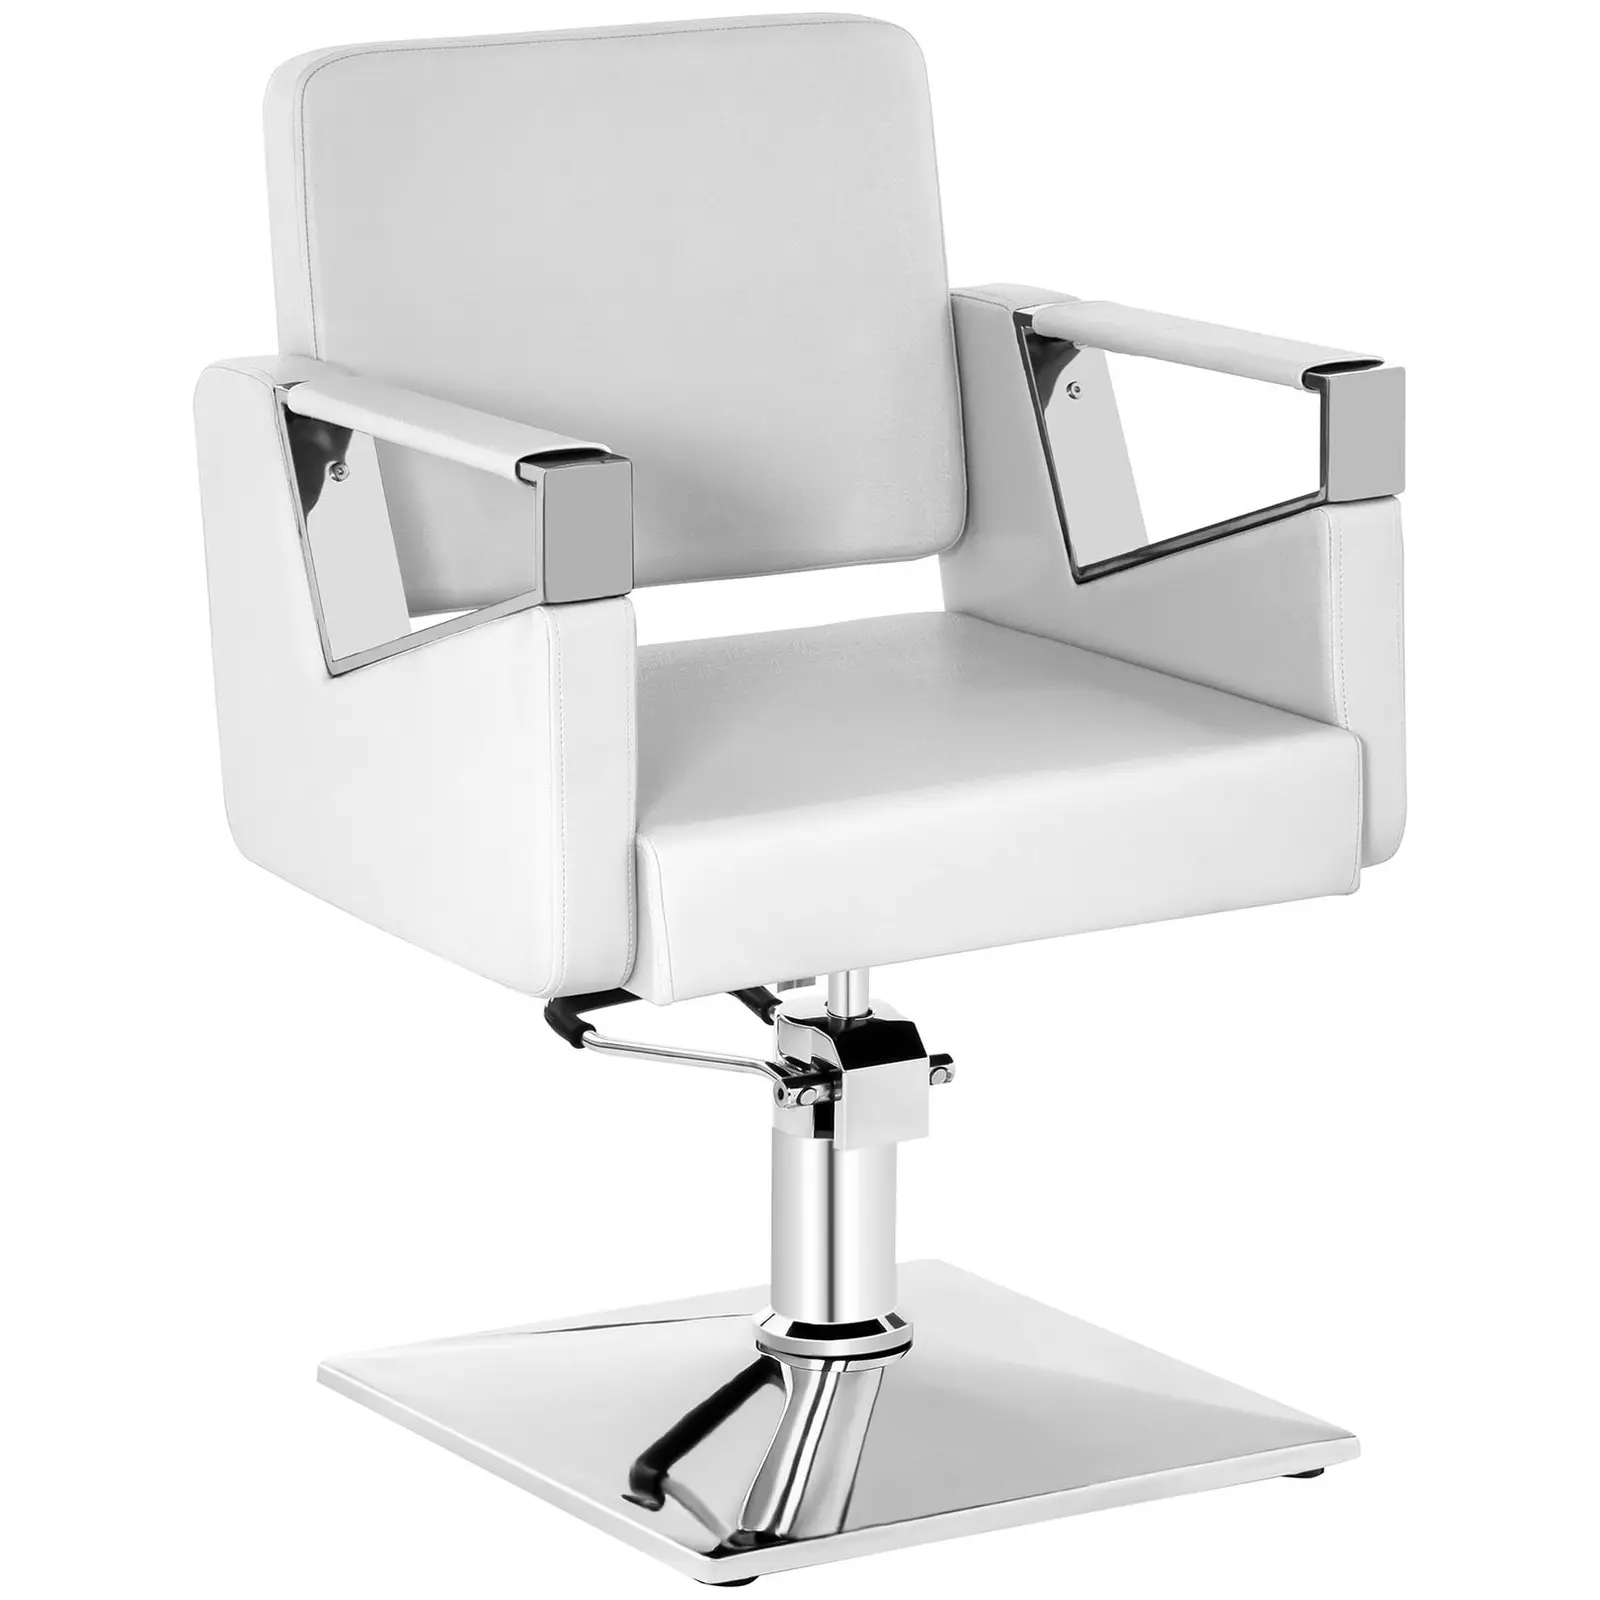 Fodrász szék - 445–550 mm - 200 kg - Matte white